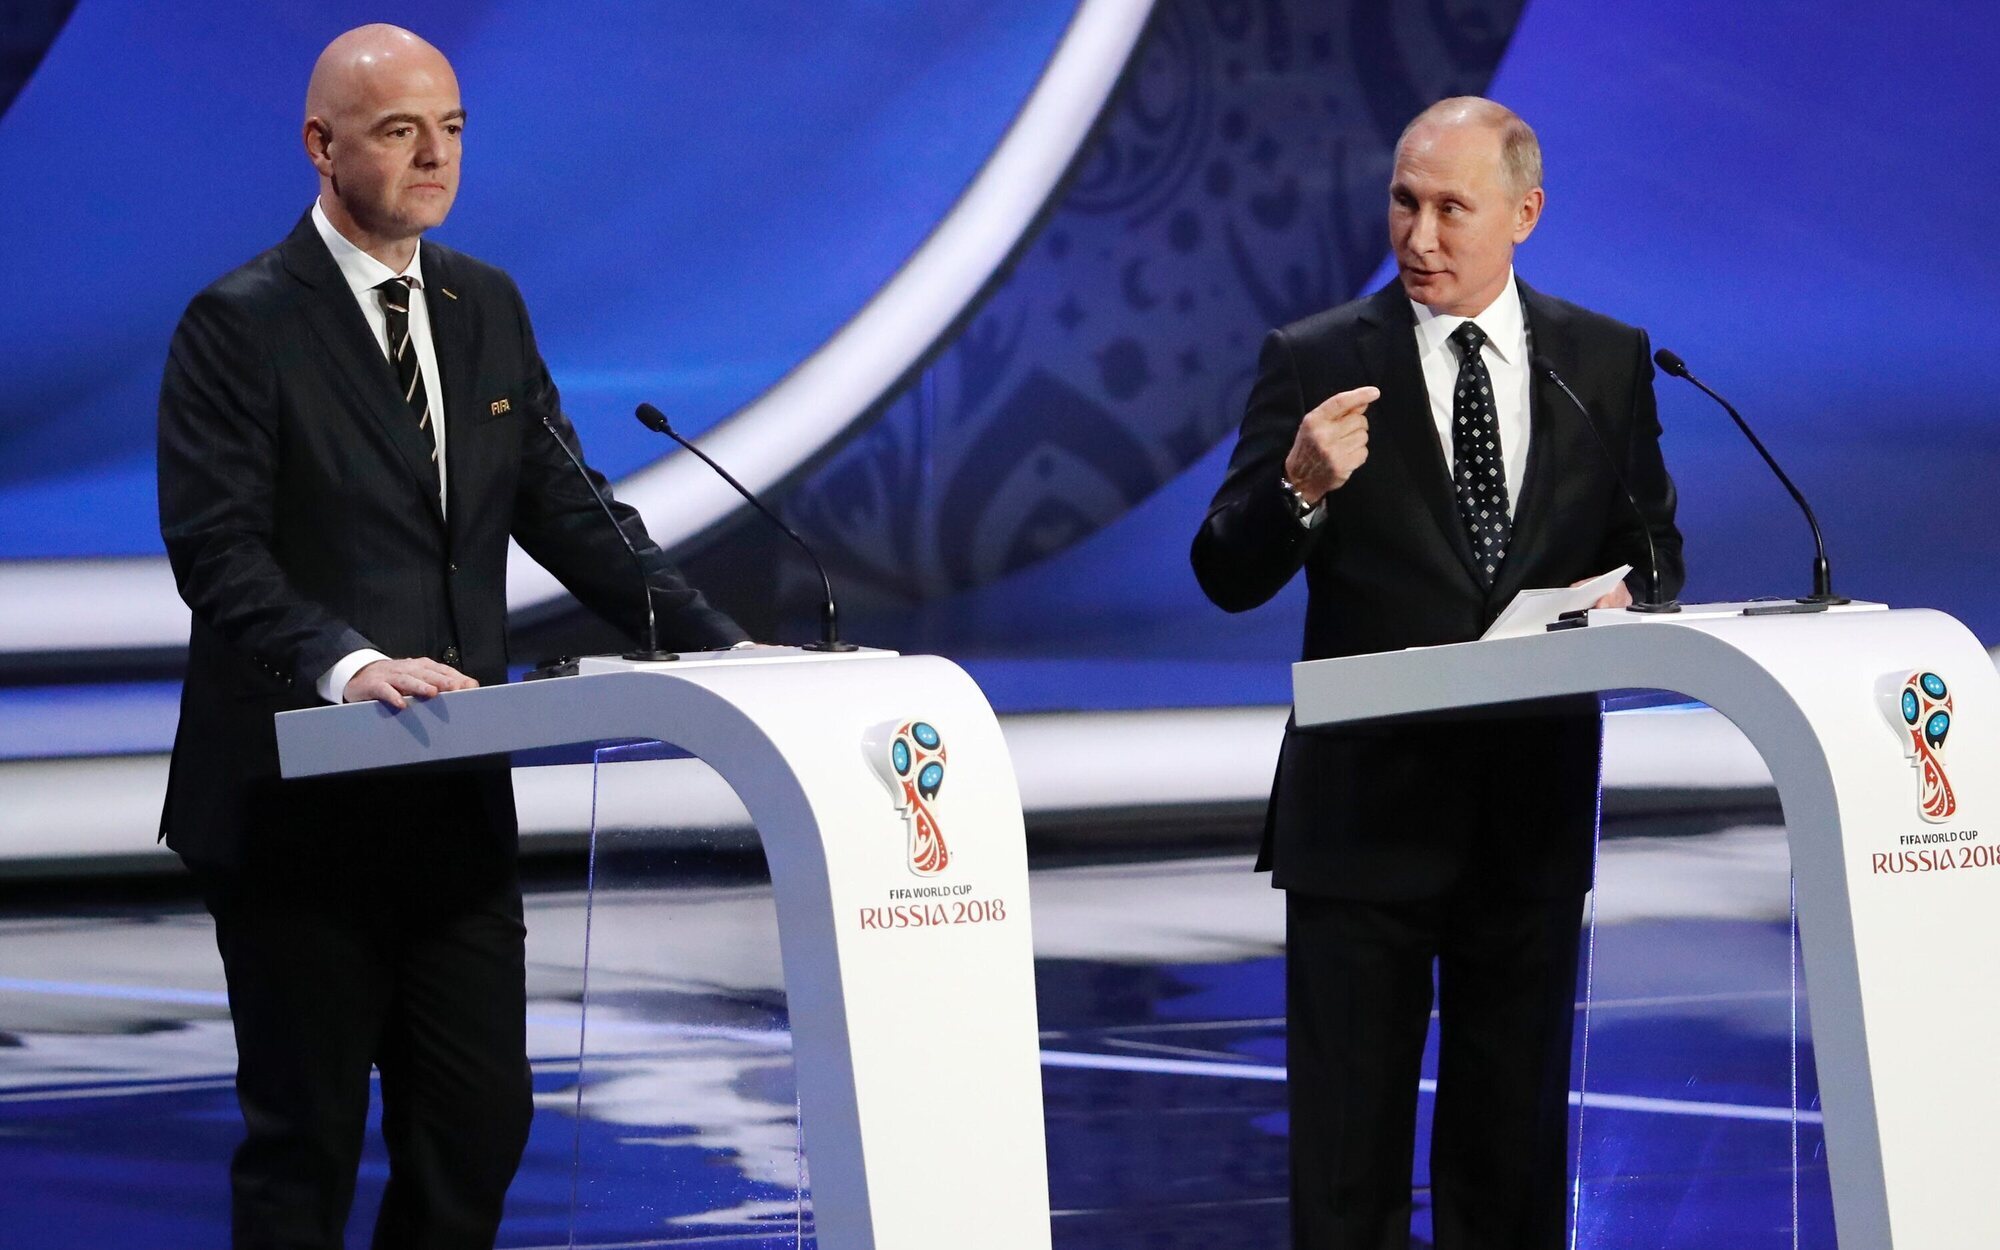 Rusia se queda fuera del Mundial de Fútbol y las competiciones europeas tras un acuerdo de la FIFA y la UEFA